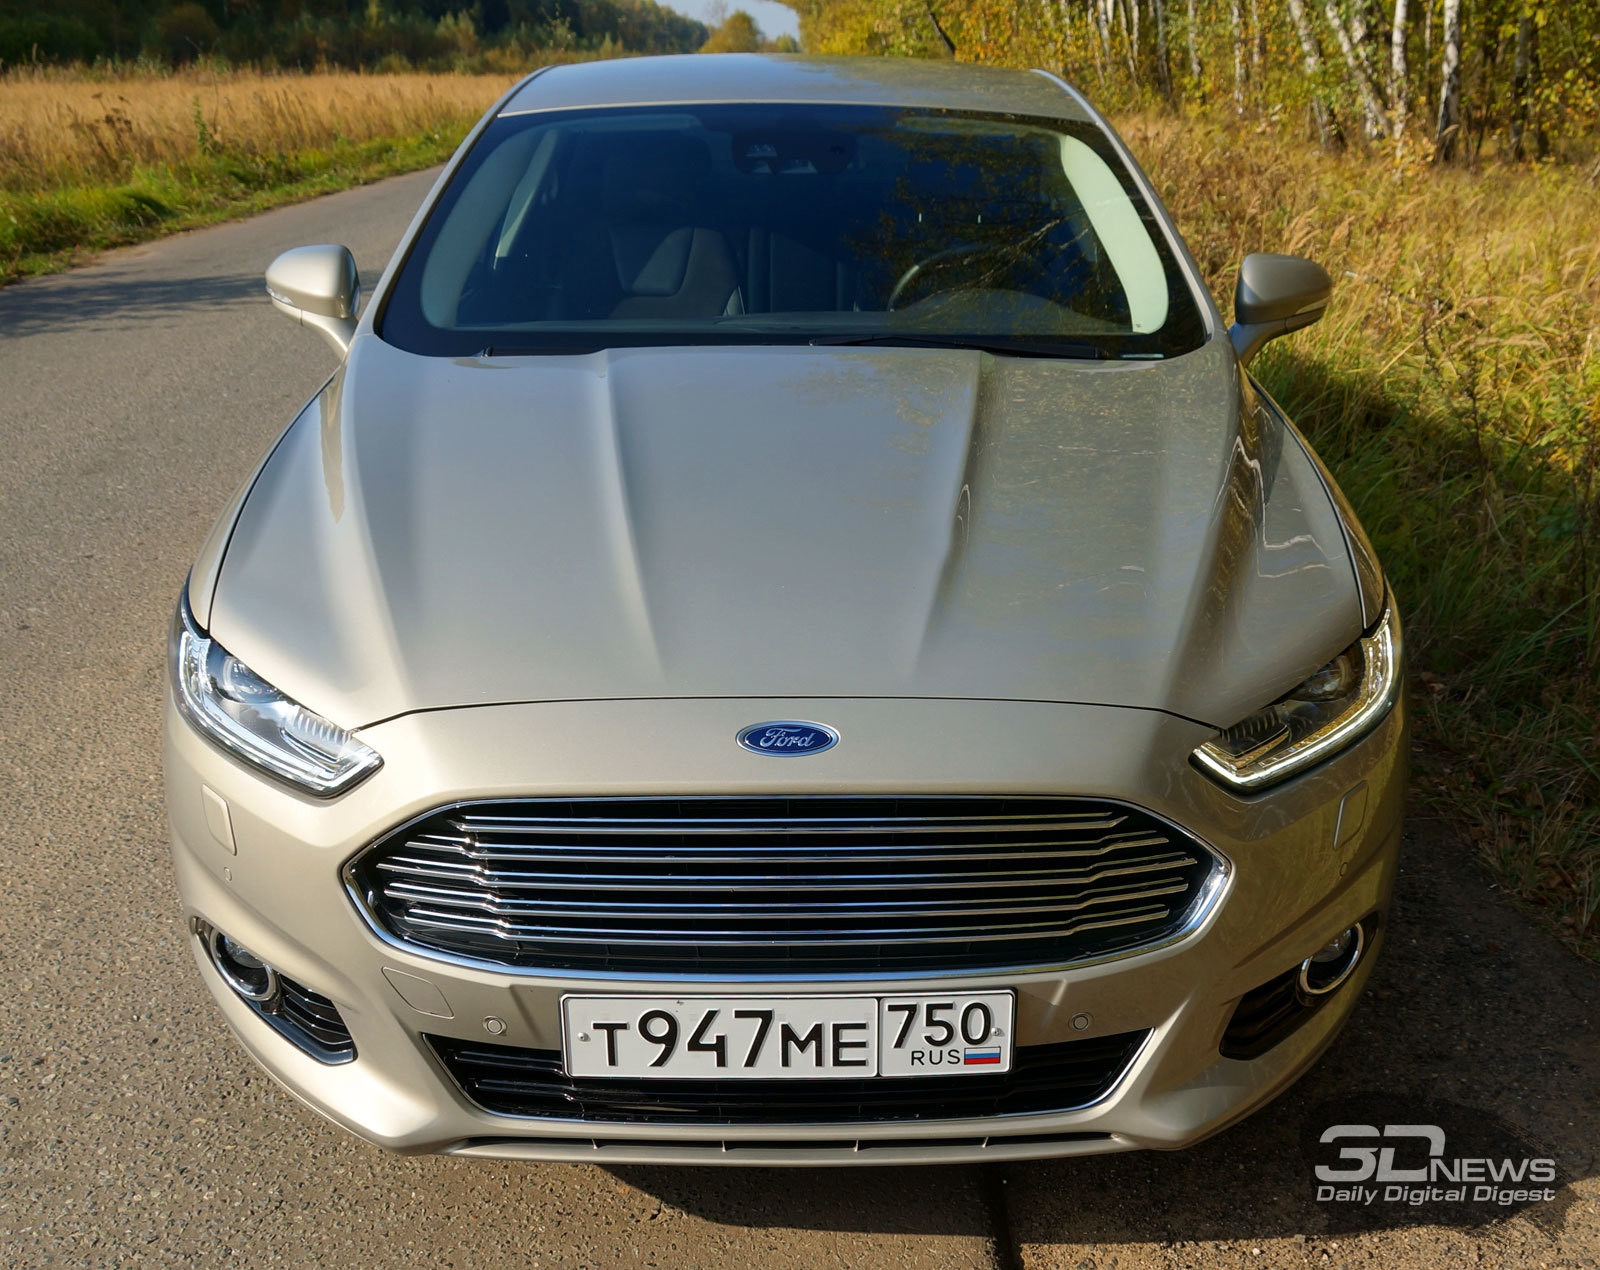 Ford Mondeo 2015, бензин, 2500 куб.см ... - Drom.ru